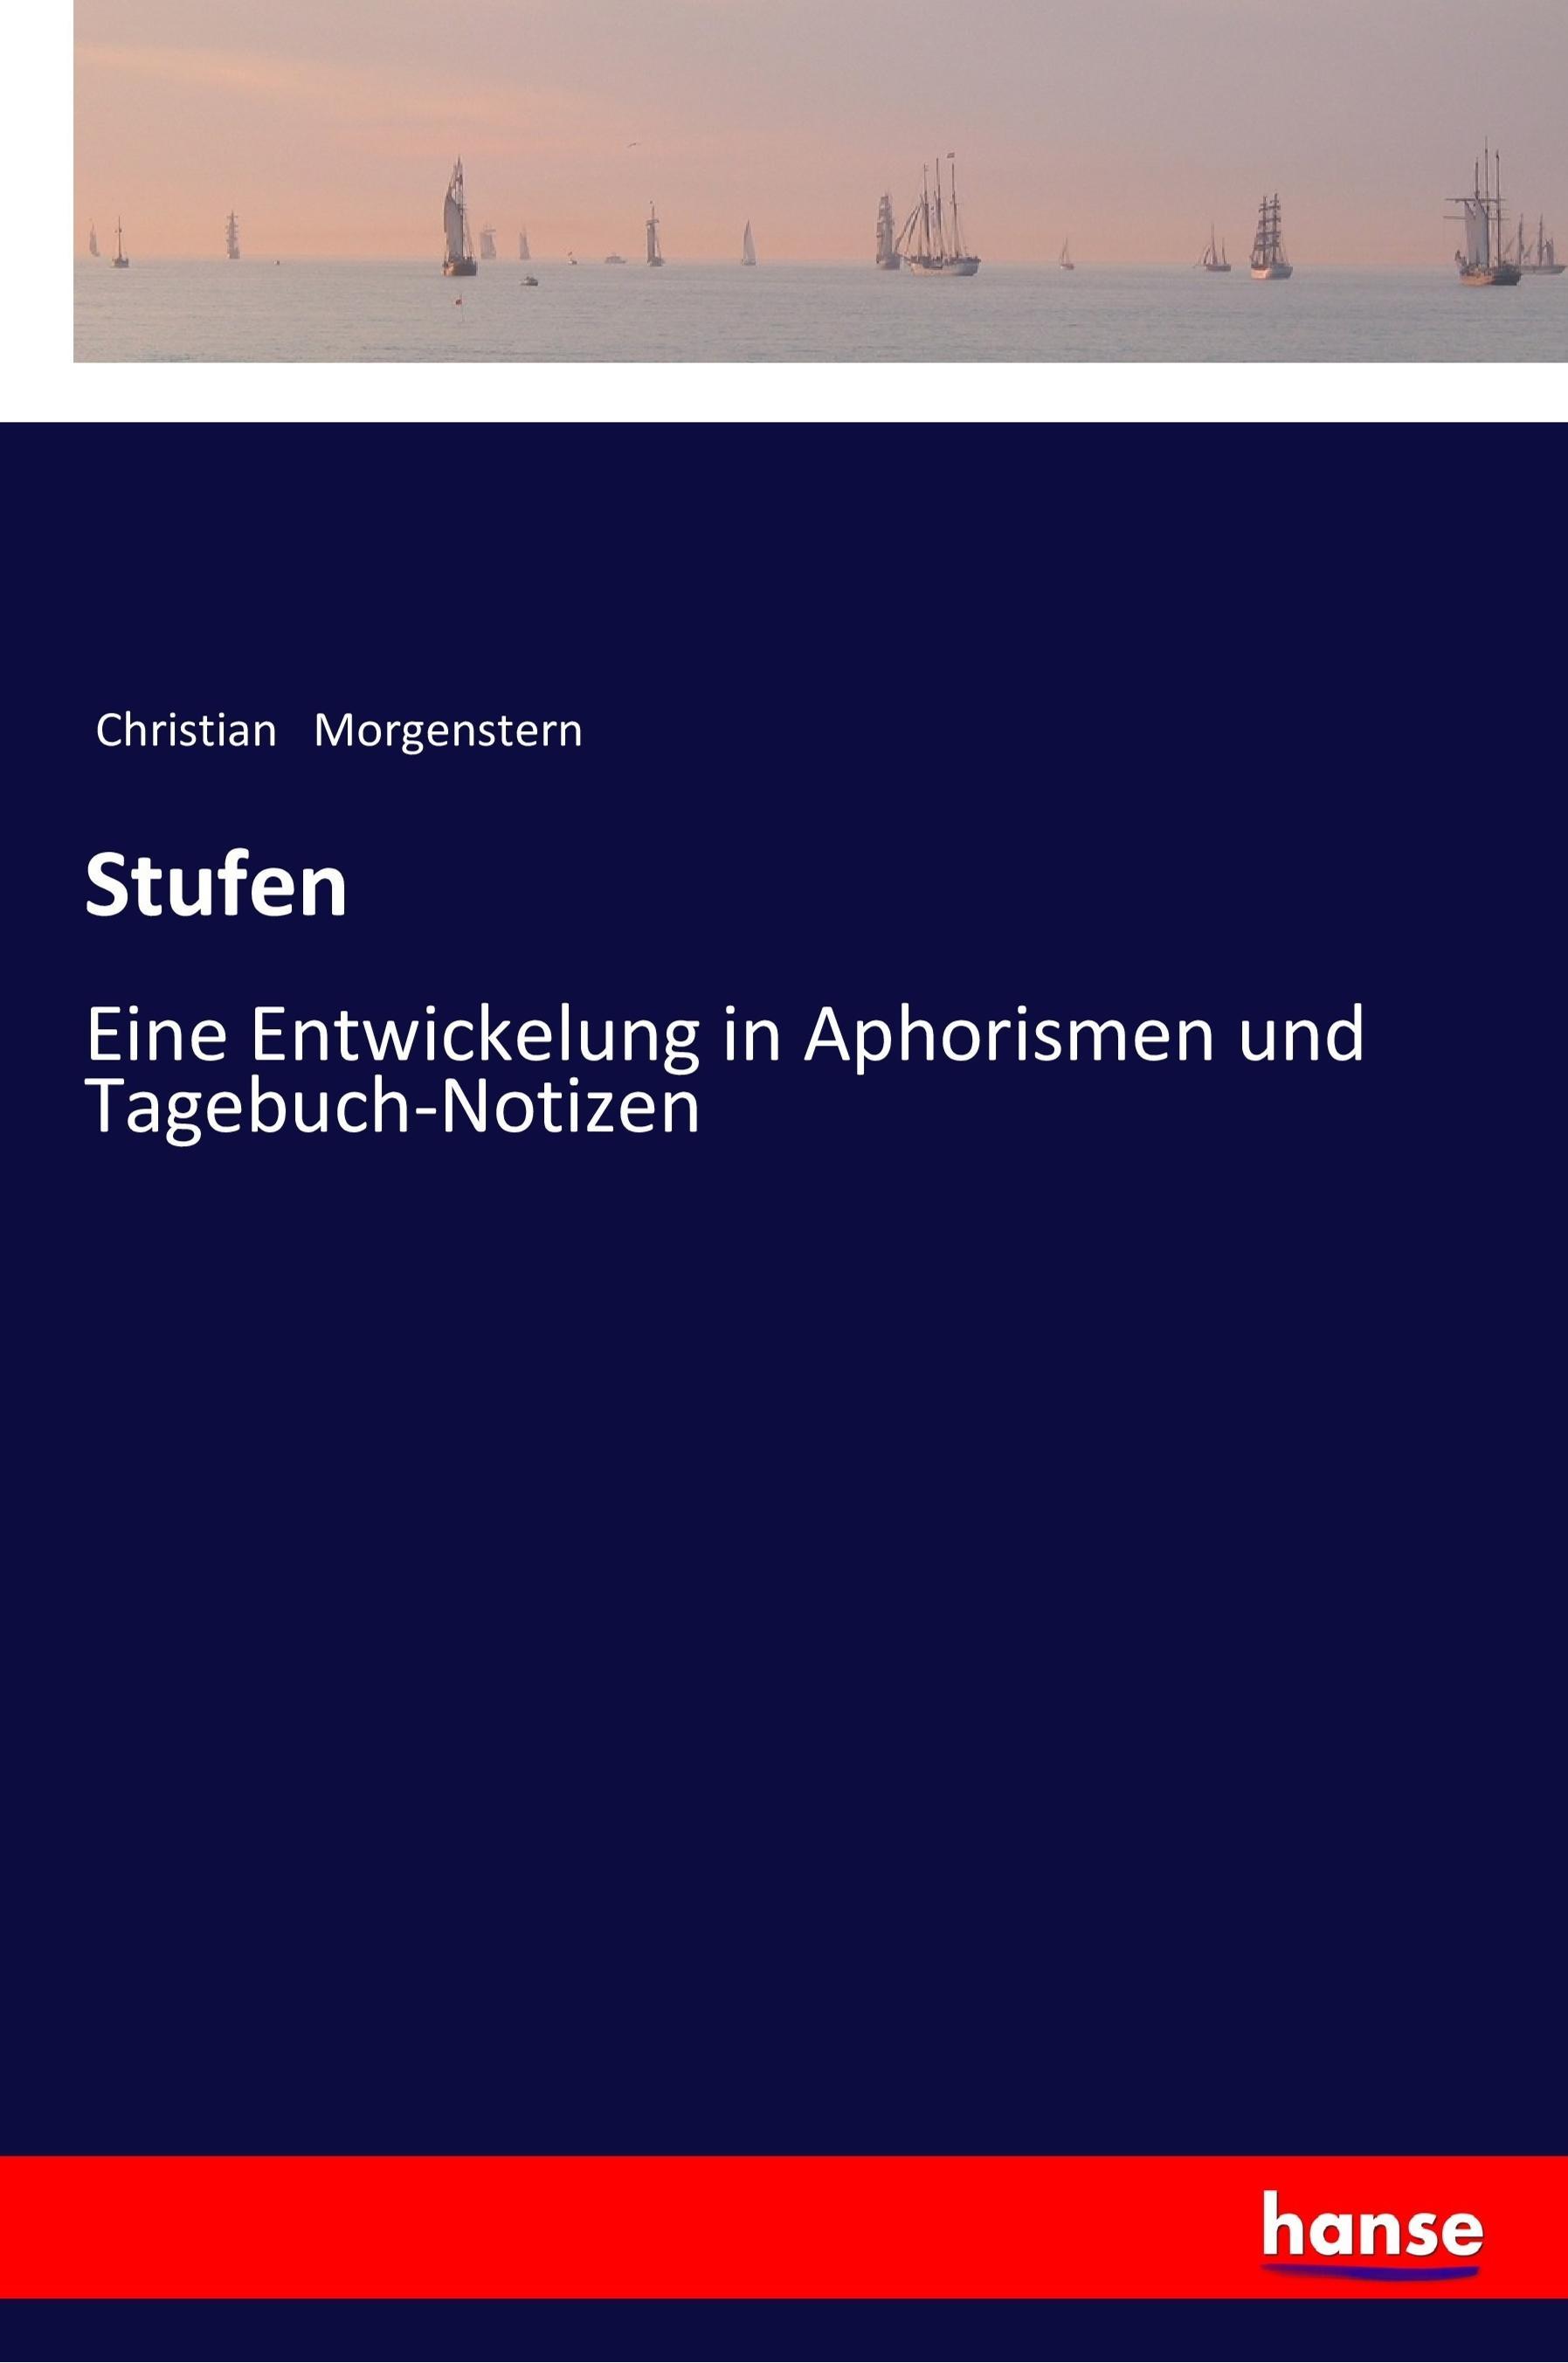 Stufen / Eine Entwickelung in Aphorismen und Tagebuch-Notizen / Christian Morgenstern / Taschenbuch / Paperback / 284 S. / Deutsch / 2017 / hansebooks / EAN 9783337199999 - Morgenstern, Christian